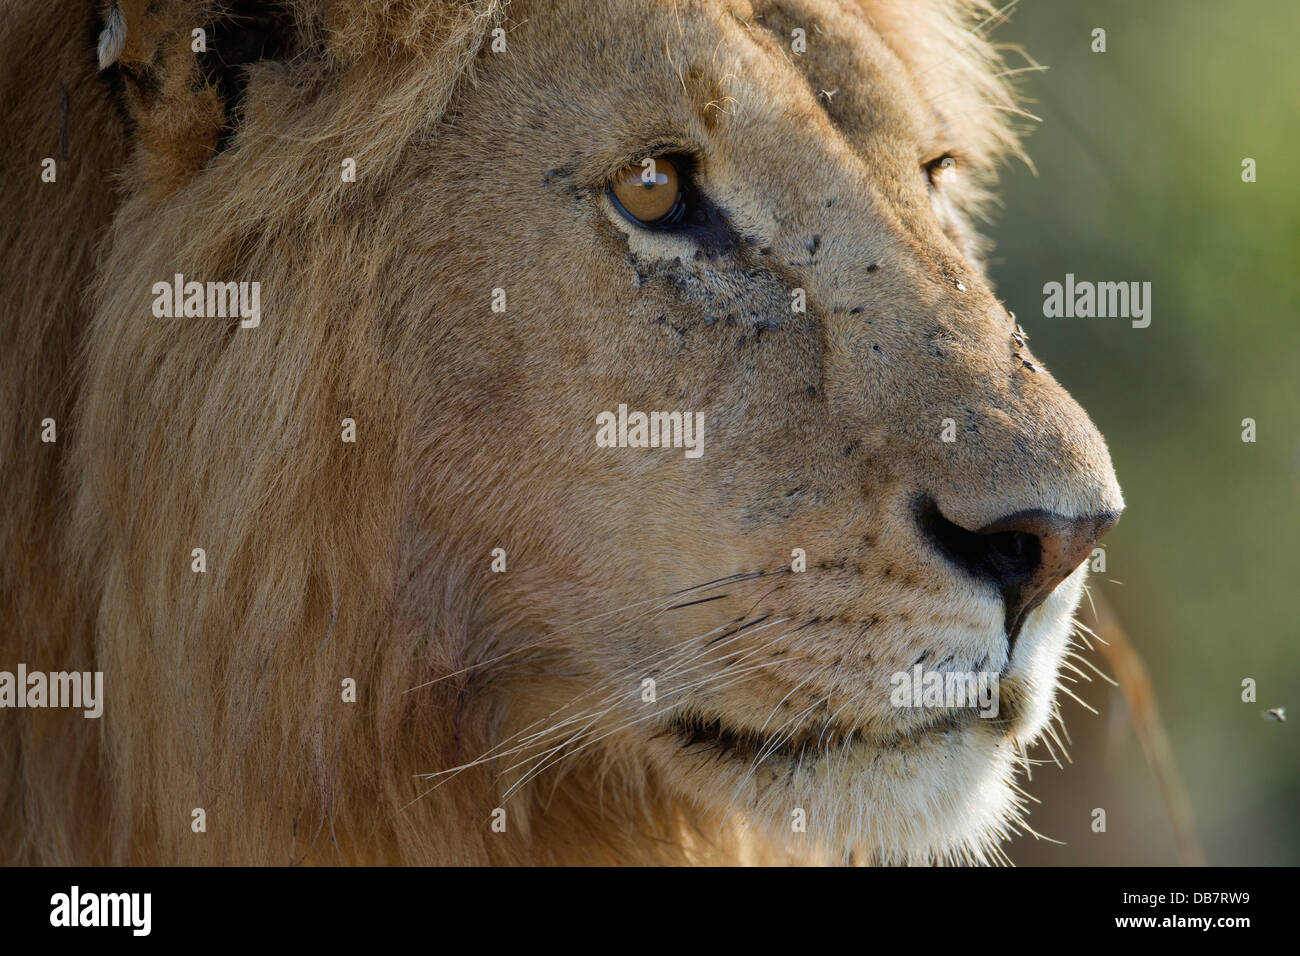 Lion (Panthera leo), homme, portrait Banque D'Images